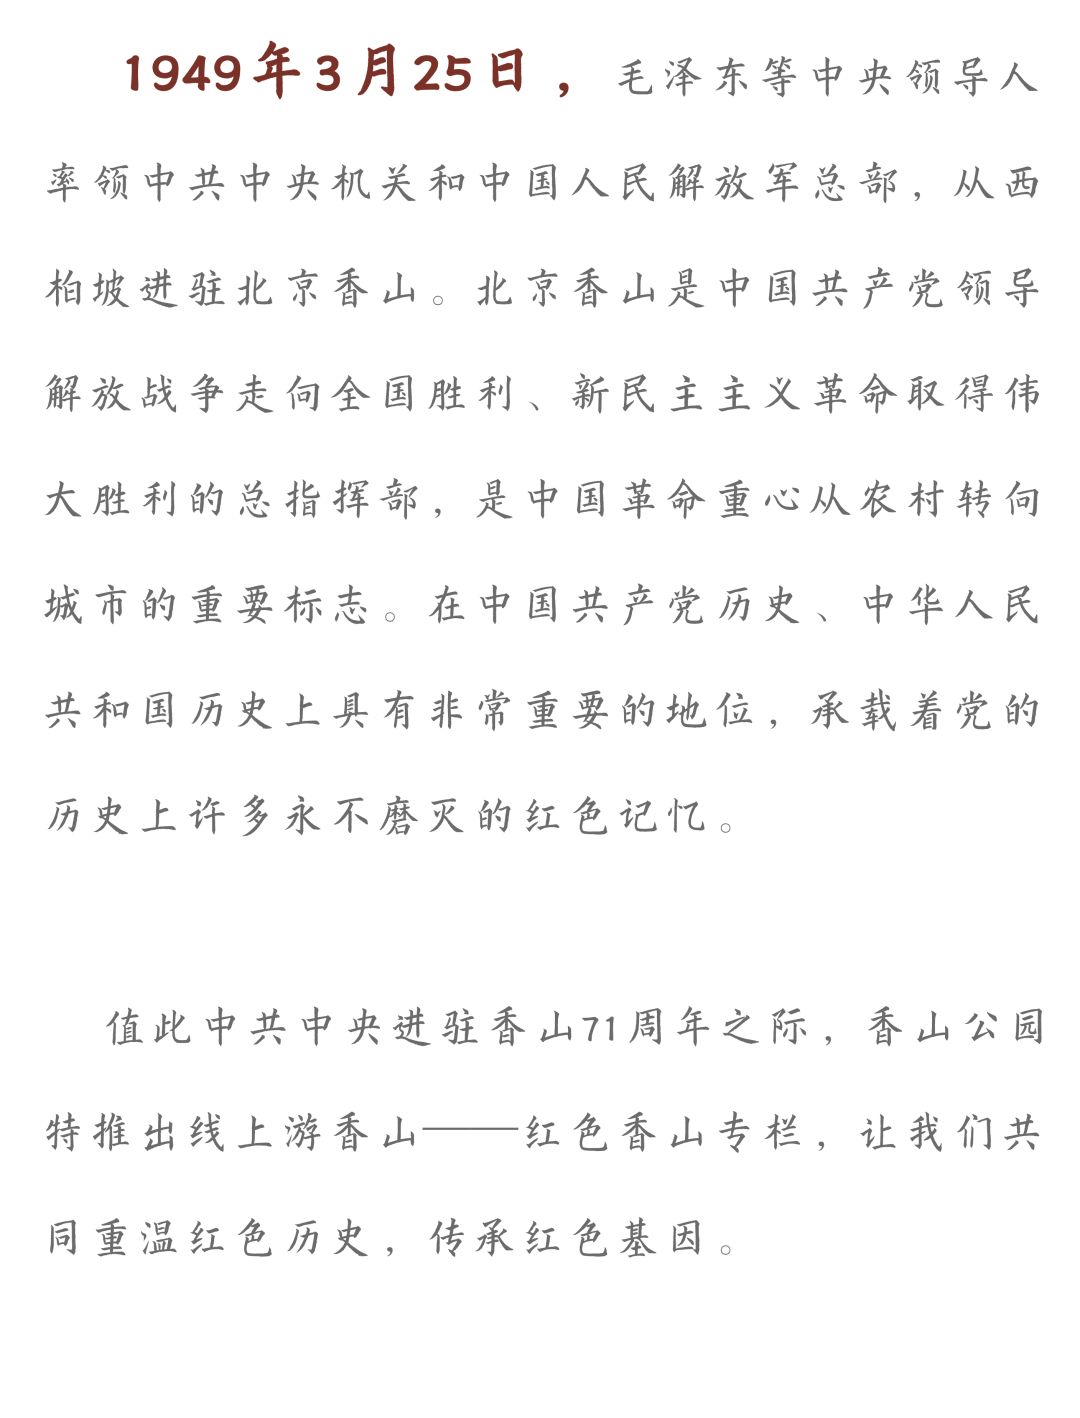 线上游香山 红色香山专栏 北京日报app新闻